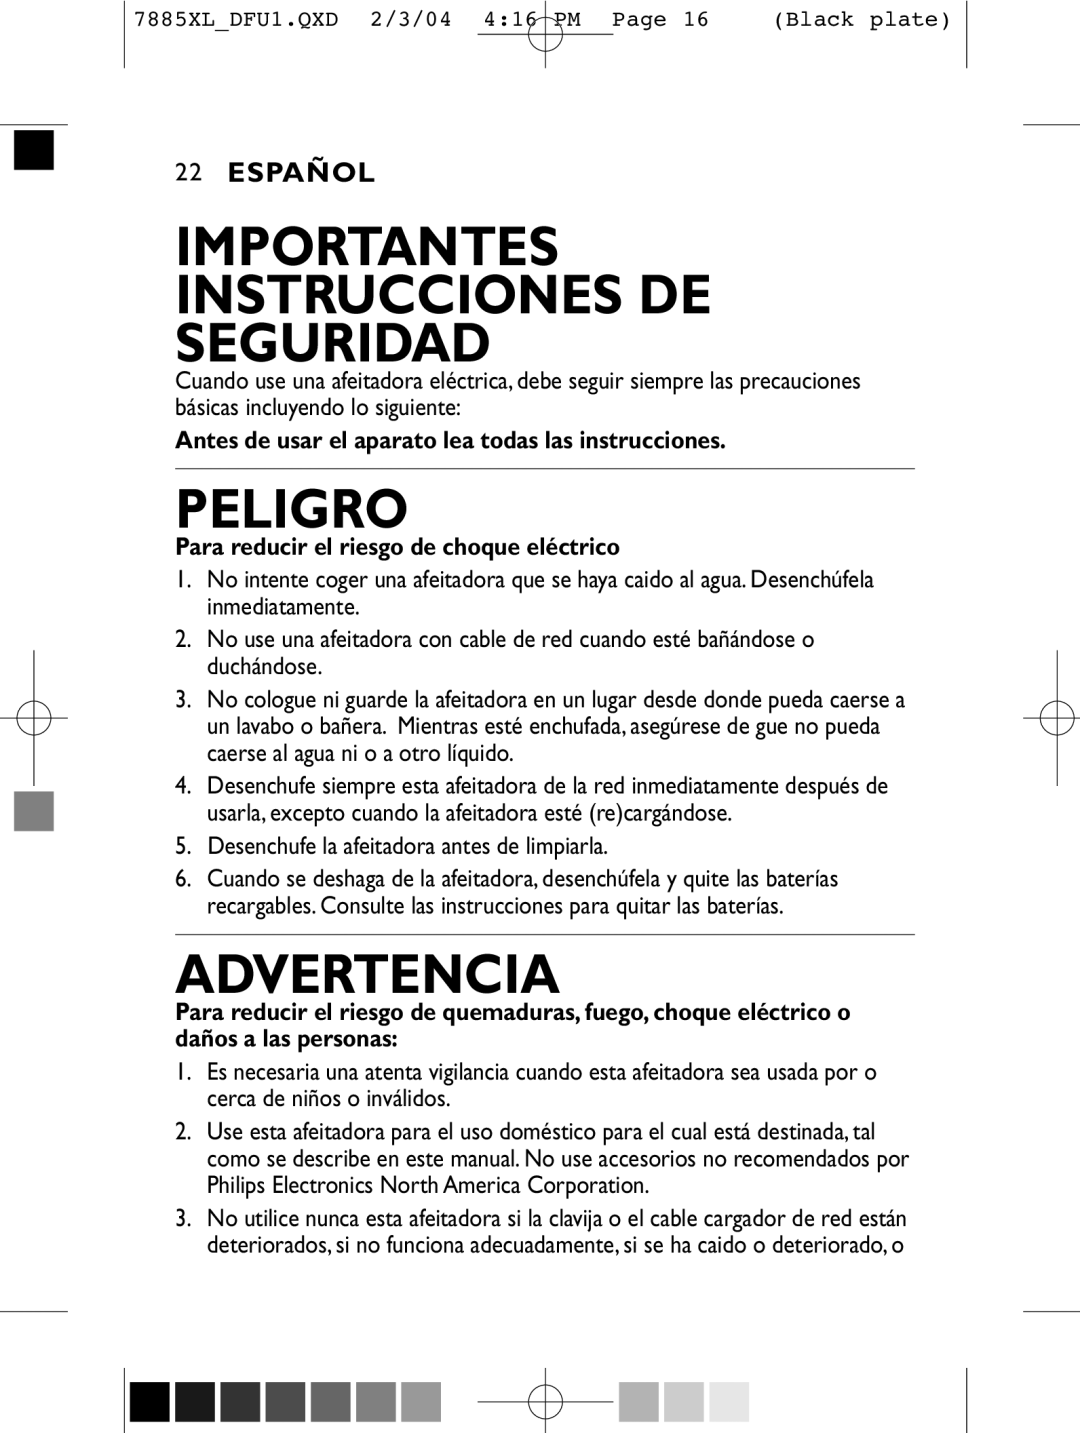 Philips 7885XL, 6887XL, 6885XL, 6886XL, 7886XL manual Importantes Instrucciones De Seguridad, Peligro, Advertencia, Español 